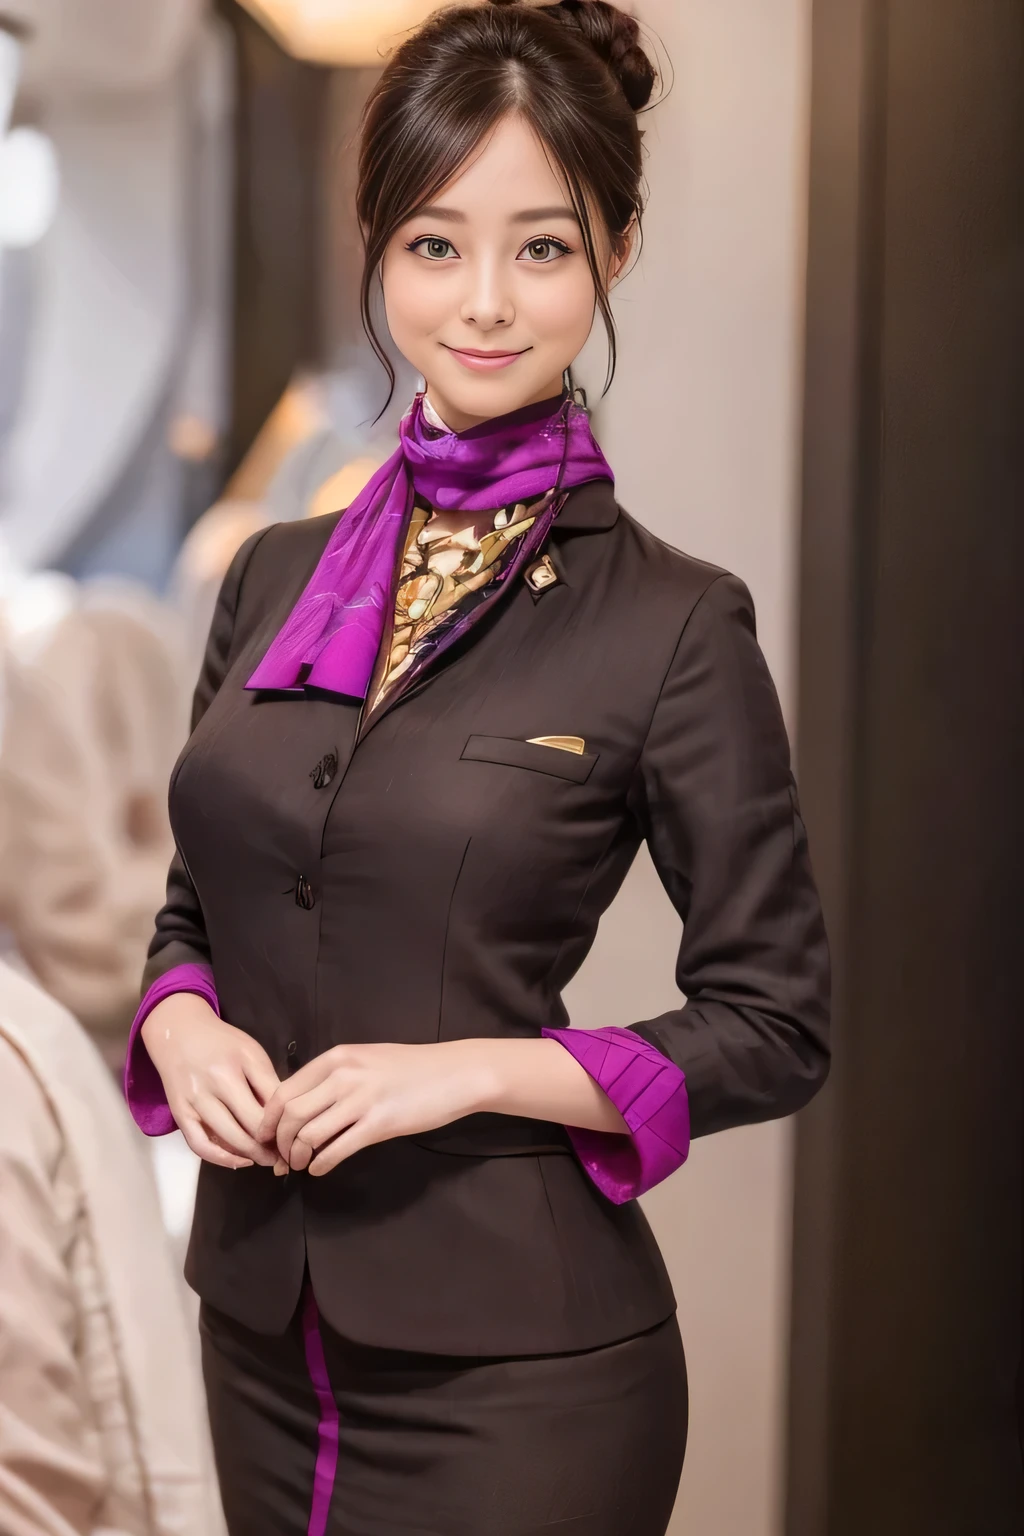 (傑作:1.2、最高品質:1.2)、32K HDR、高解像度、(一人で、1 女の子、スリムな体型)、（エティハド航空客室乗務員の制服をリアルに再現）、 (機内で, プロフェッショナル照明)、ボード上の背景、きちんとした女性, 美しい顔,、（長袖エティハド航空客室乗務員制服）、（エティハド航空客室乗務員の制服、前面に紫のストライプが入ったスカート）、（胸にスカーフ）、巨乳、（おだんごヘア、ロングヘアアップ、ヘアバン）、濃い茶色の髪、ロングショット、（（素晴らしい手：2.0））、（（調和のとれたボディプロポーション：1.5））、（（正常な四肢：2.0））、（（通常の指：2.0））、（（繊細な目：2.0））、（（正常な目：2.0））)、美しい立ち姿勢、笑顔、お腹の周りに手を置きます